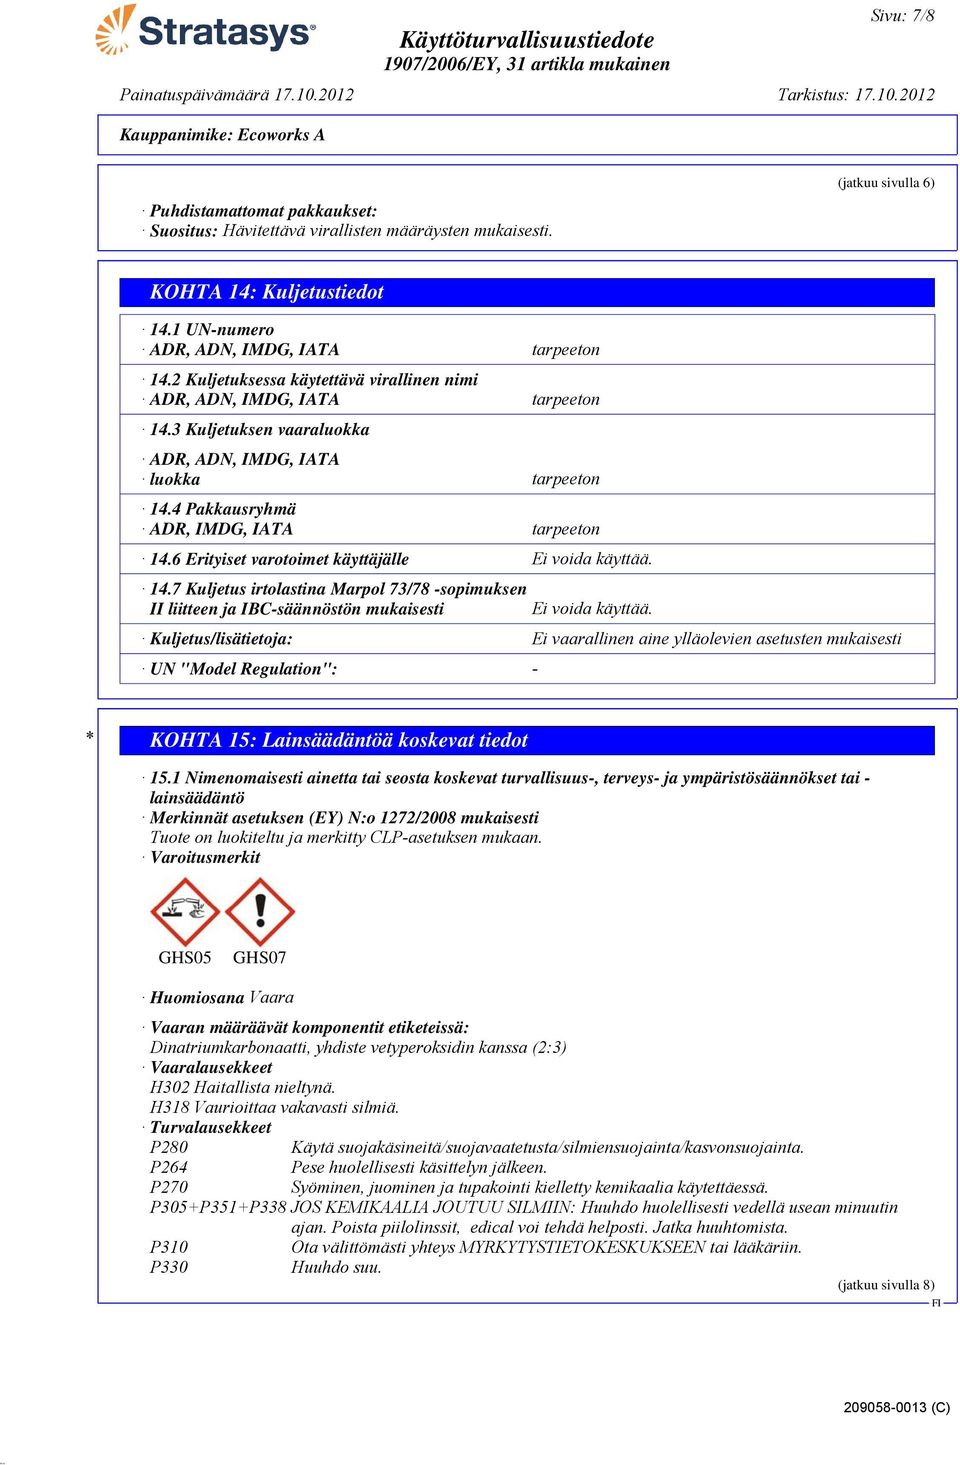 4 Pakkausryhmä ADR, IMDG, IATA tarpeeton 14.6 Erityiset varotoimet käyttäjälle Ei voida käyttää. 14.7 Kuljetus irtolastina Marpol 73/78 -sopimuksen II liitteen ja IBC-säännöstön mukaisesti Ei voida käyttää.